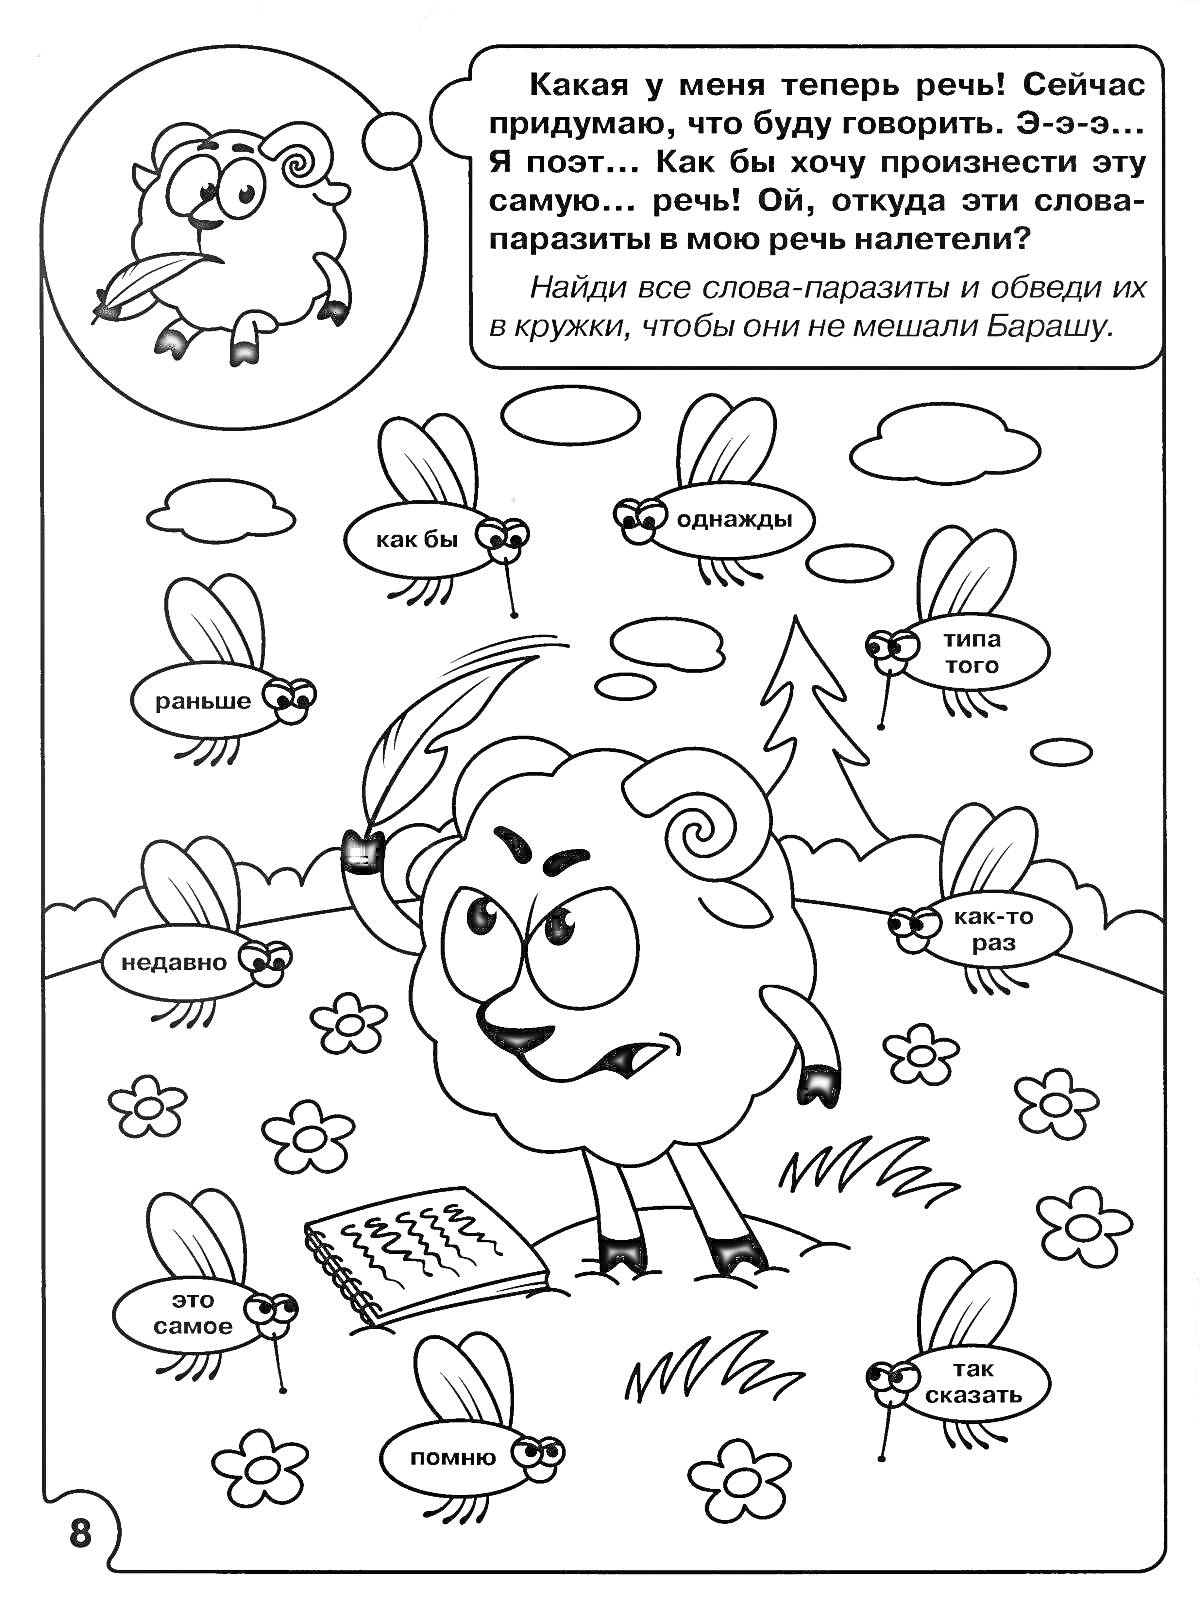 Раскраска Баран произносит речь и обводит слова-паразиты в кружок. На картинке изображён баран с пером, блокнотом и мыслящими облаками над его головой. Вокруг него летают слова-паразиты в виде пчёлок: 